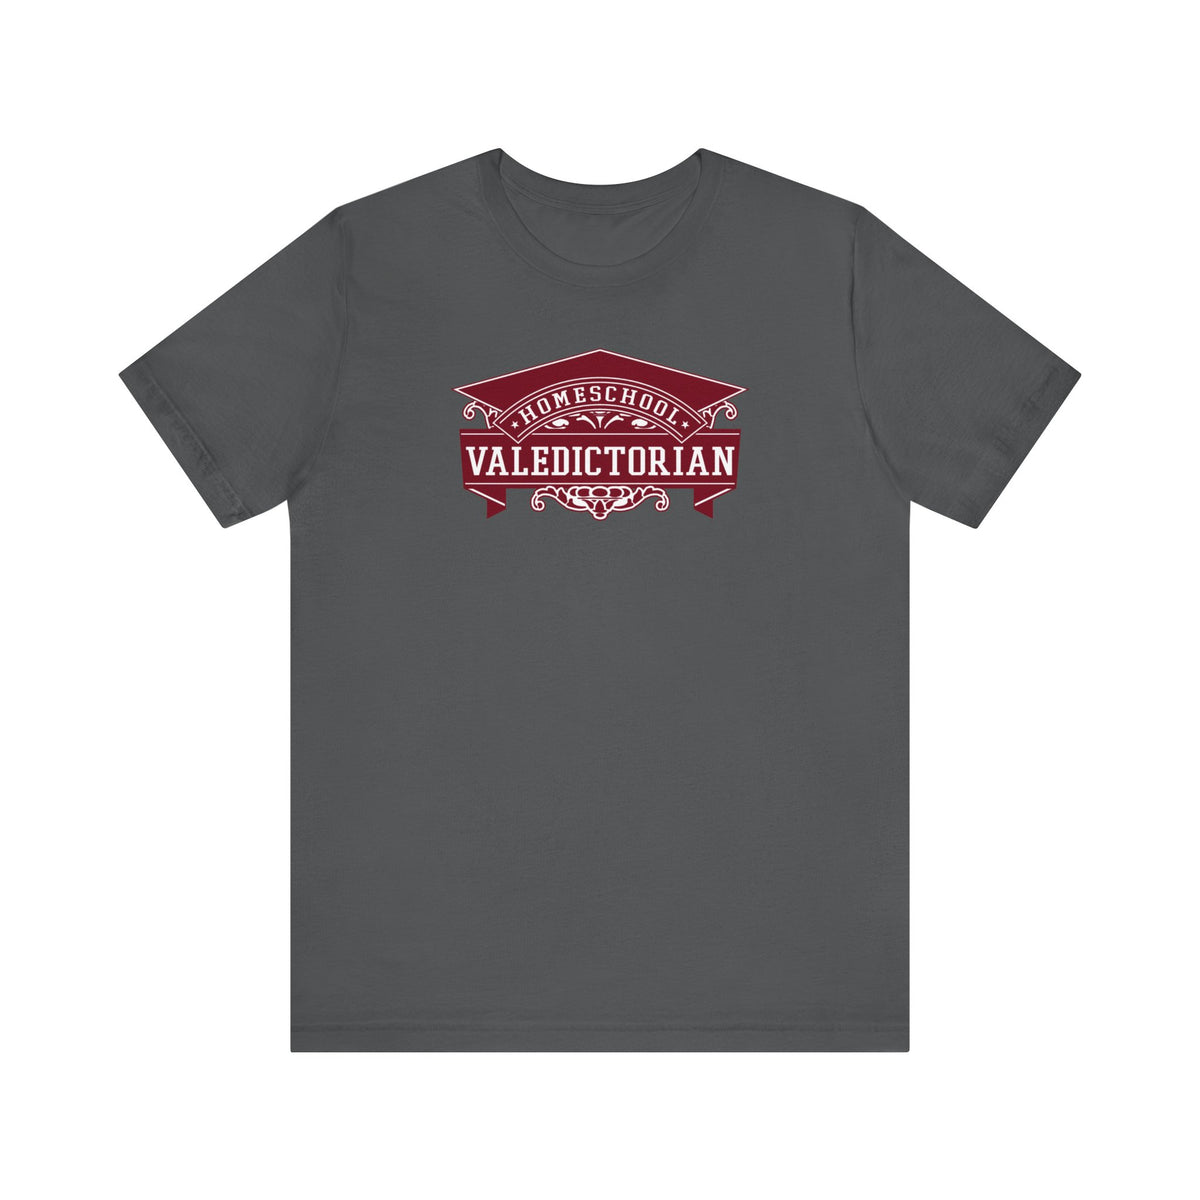 Home School Valedictorian - Men's T-Shirt